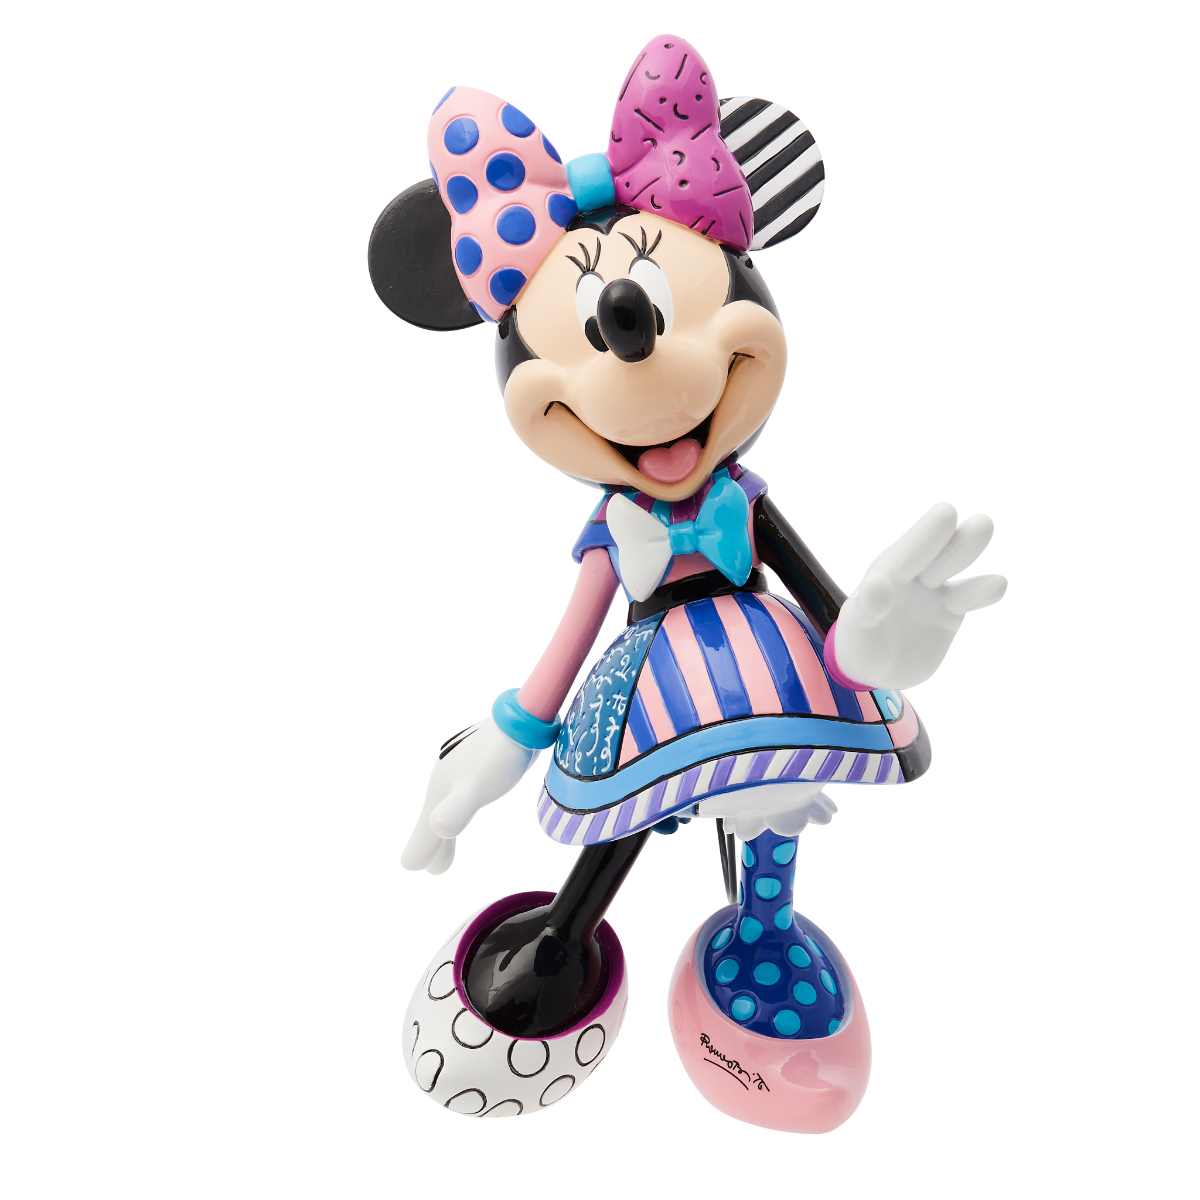 Disney Britto Minnie Mouse 8